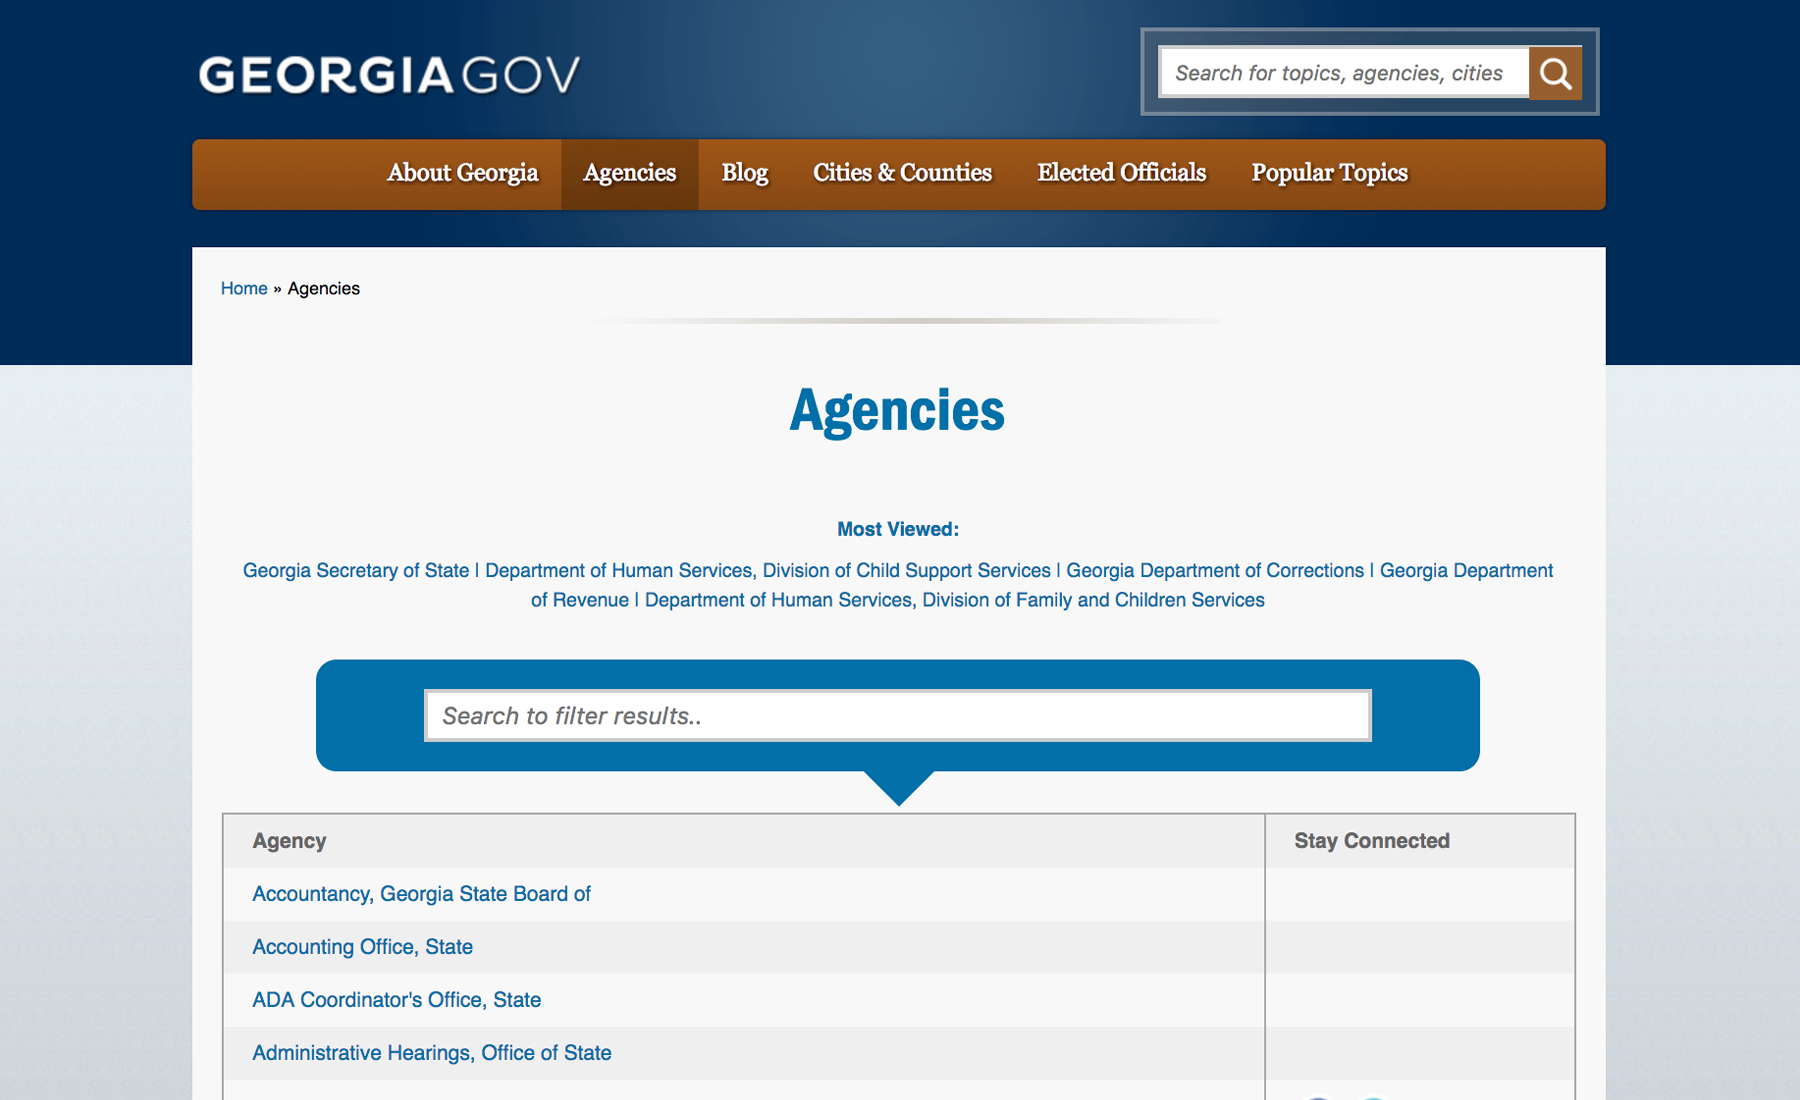 Georgia.gov Agencies Page